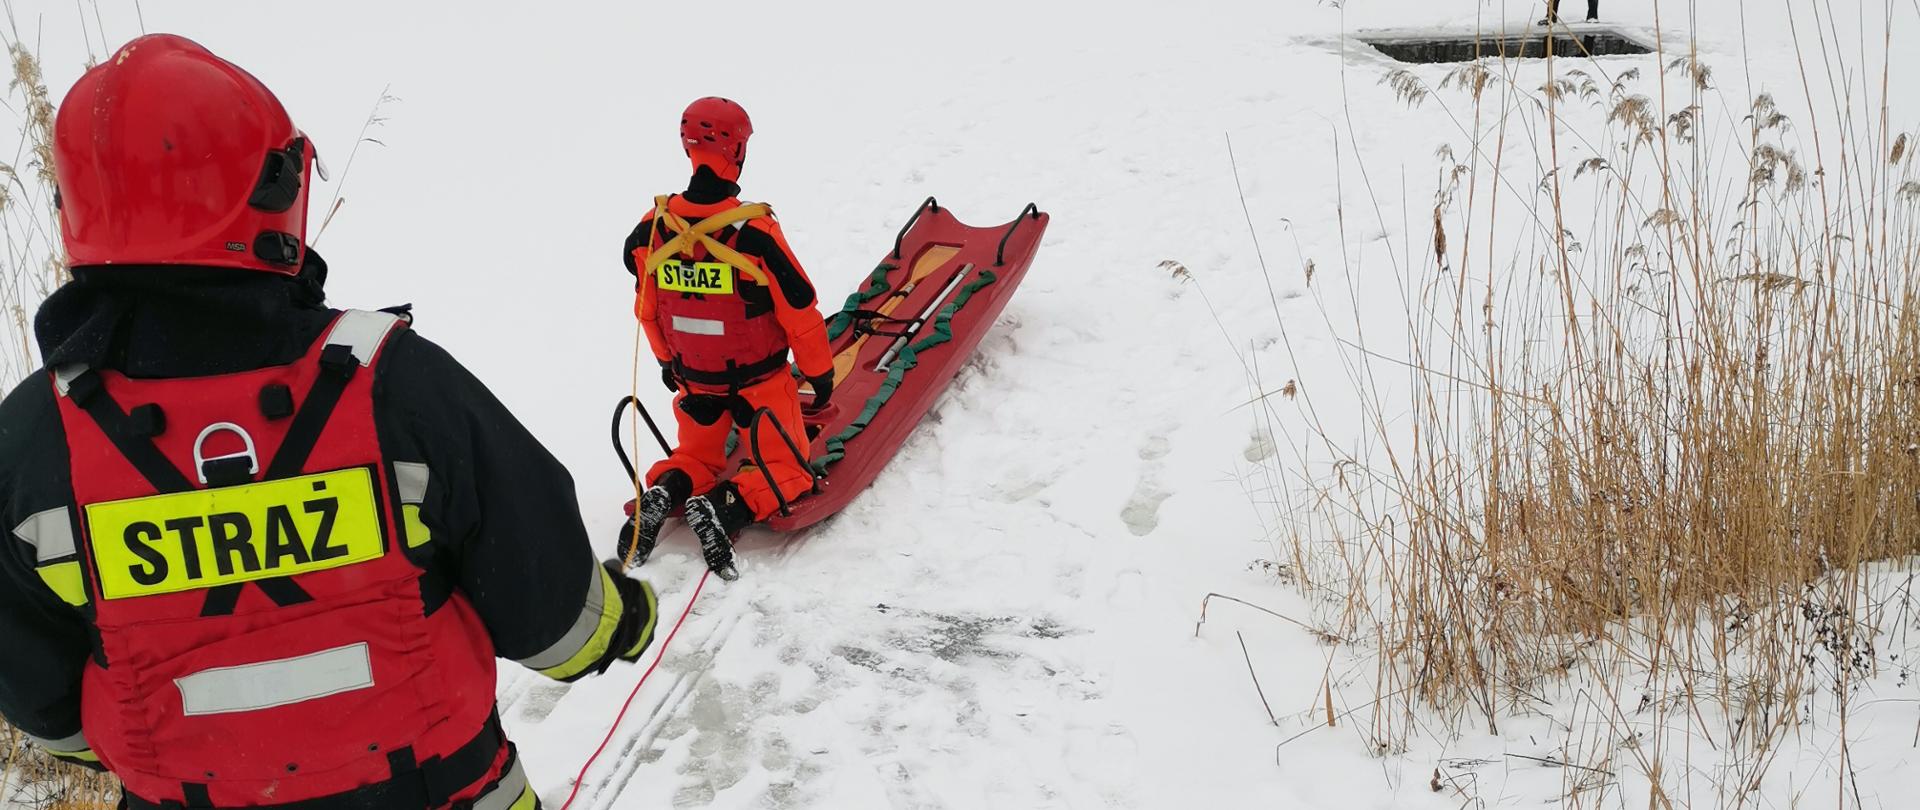 na zdjeciu widać strażaków w kombinezonach ćwiczących podejmowanie osób poszkodowanyh na lodzie